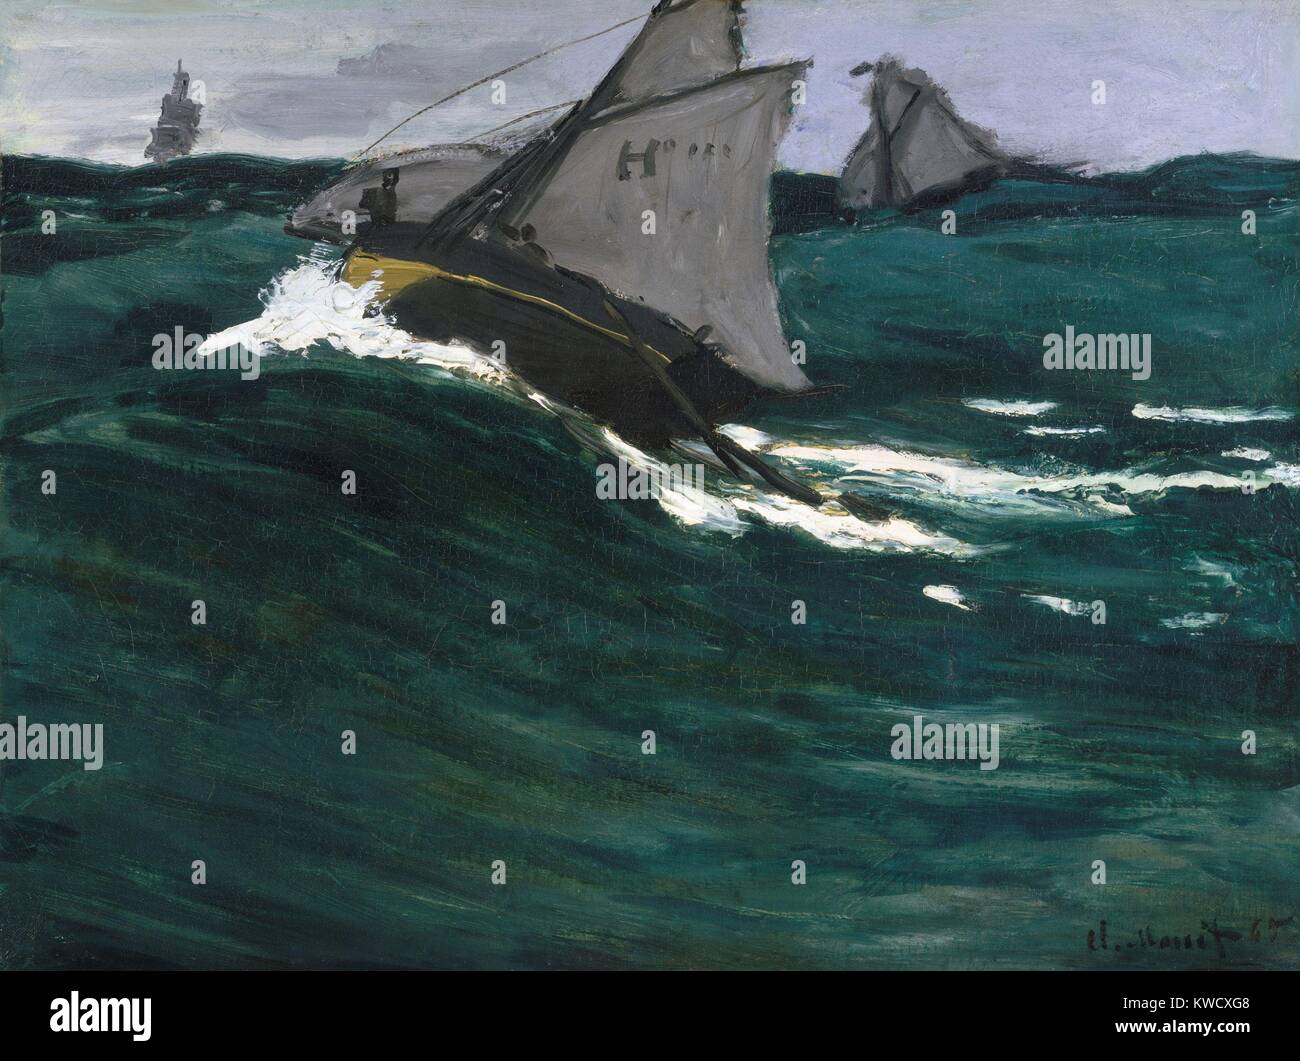 Die grüne Welle, von Claude Monet, Ca. 1866-67, französischer impressionistischer Malerei, Öl auf Leinwand. Diese Marine verwendet, um Elemente von Manets 1864 Gemälde der USS Kearsarge. Beide Gemälde beschäftigen hohe Horizonte und malerische Wellen (BSLOC 2017 3 17) Stockfoto